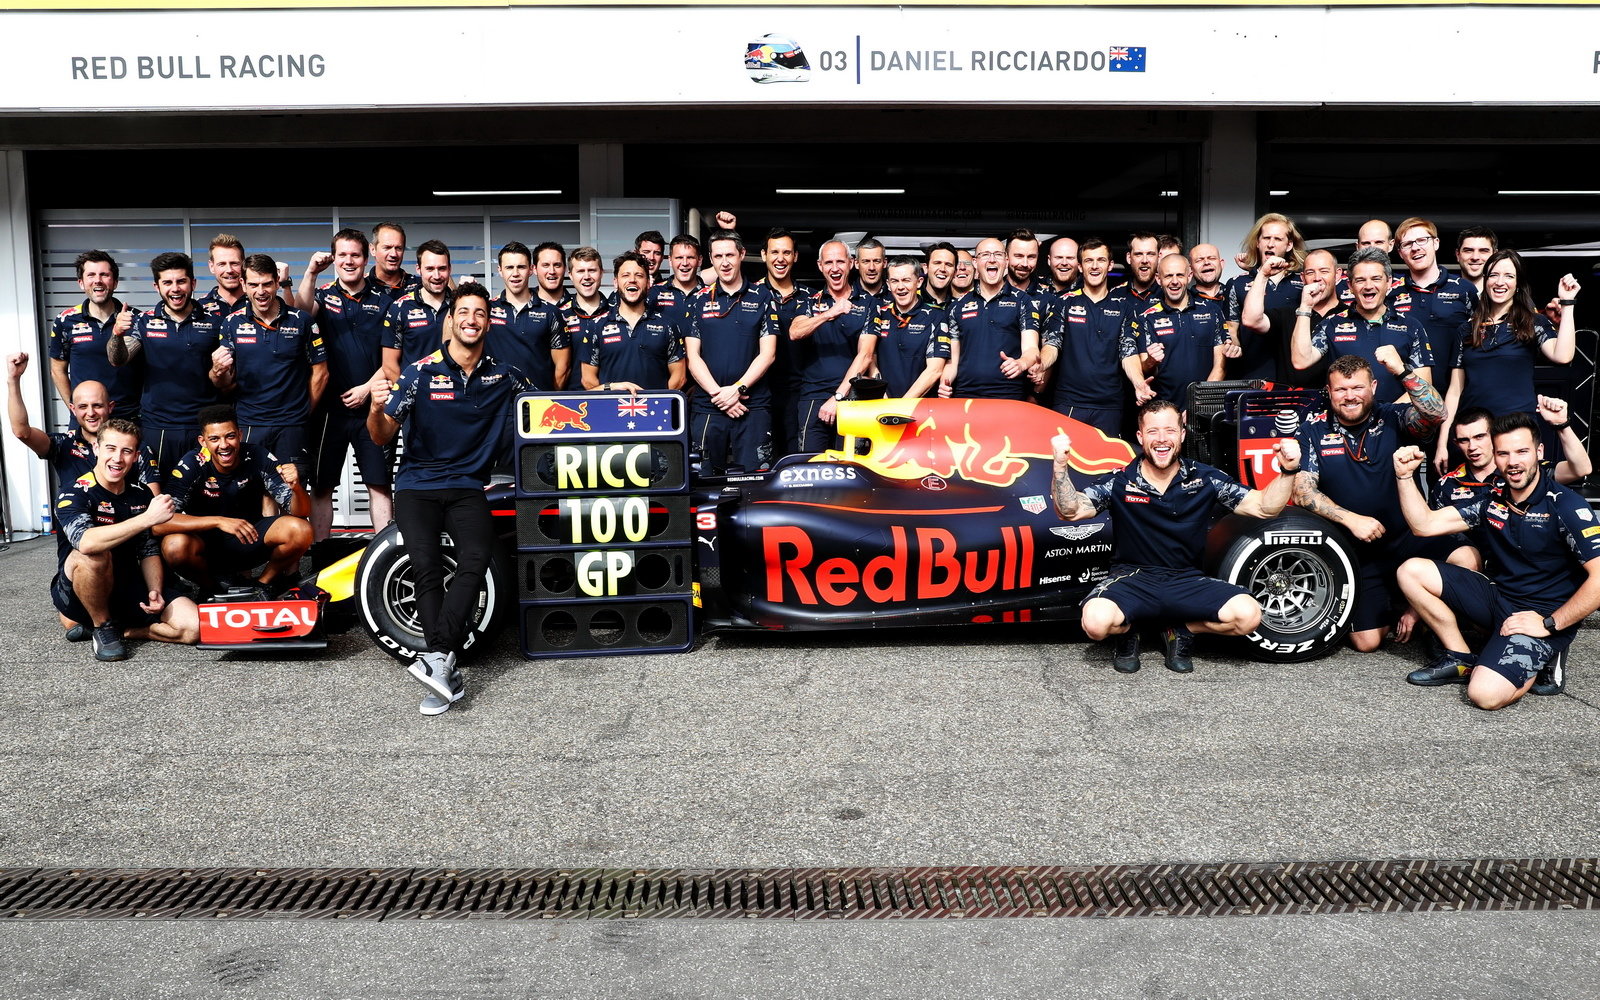 Daniel Ricciardo slaví s týmem 100 VC v Německu